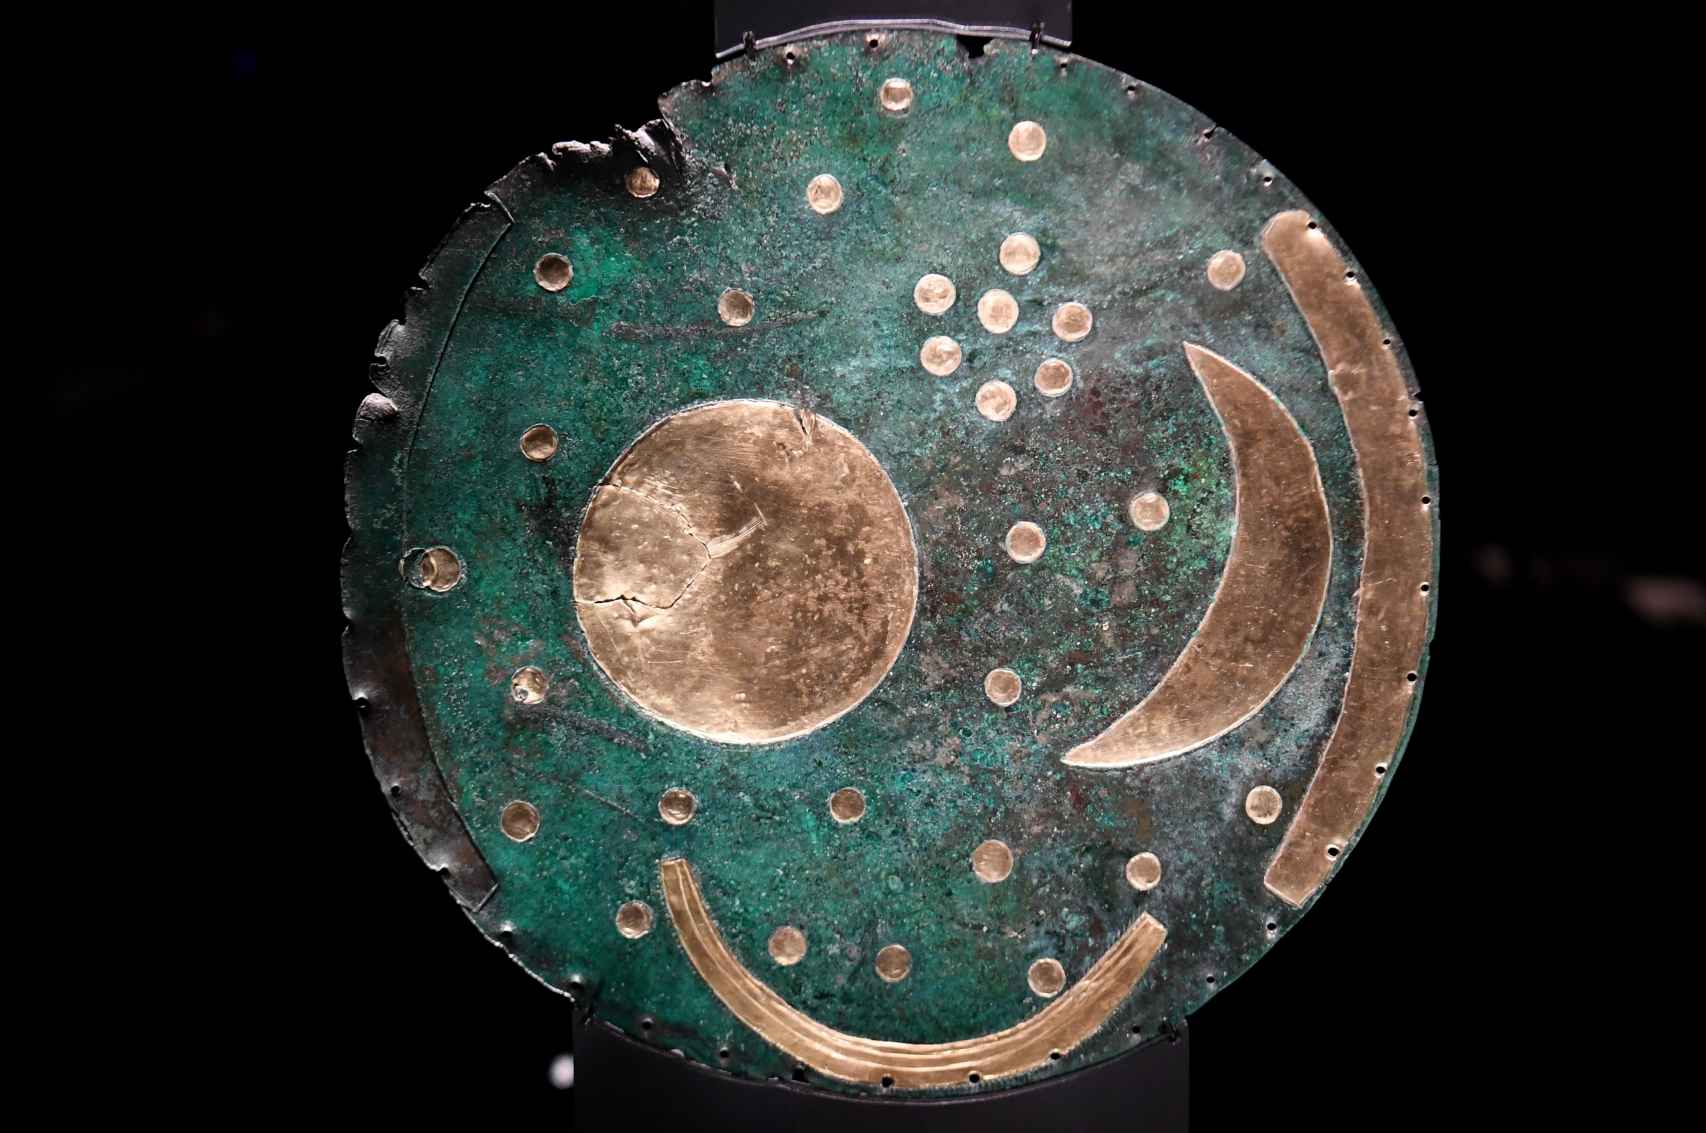 El disco celeste de Nebra es una de las joyas de la muestra.